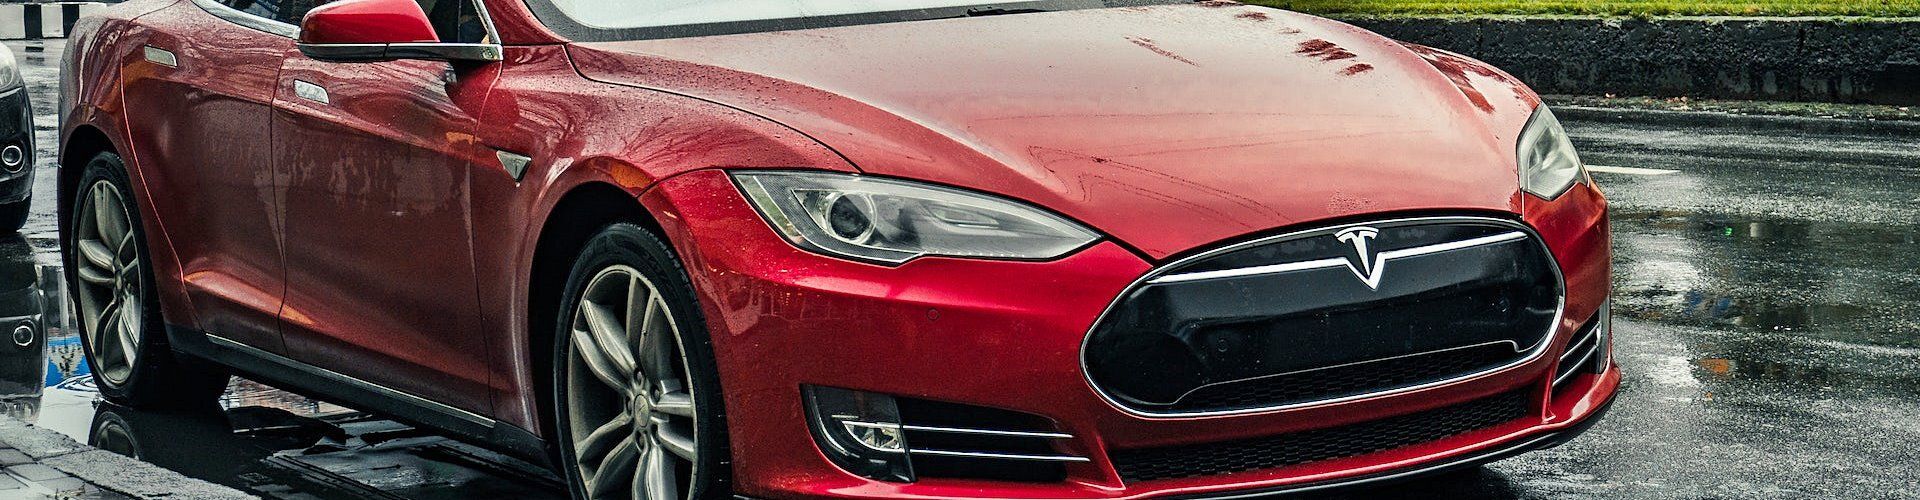 Los coches de Tesla podrán conducir solos por tan solo 3.000